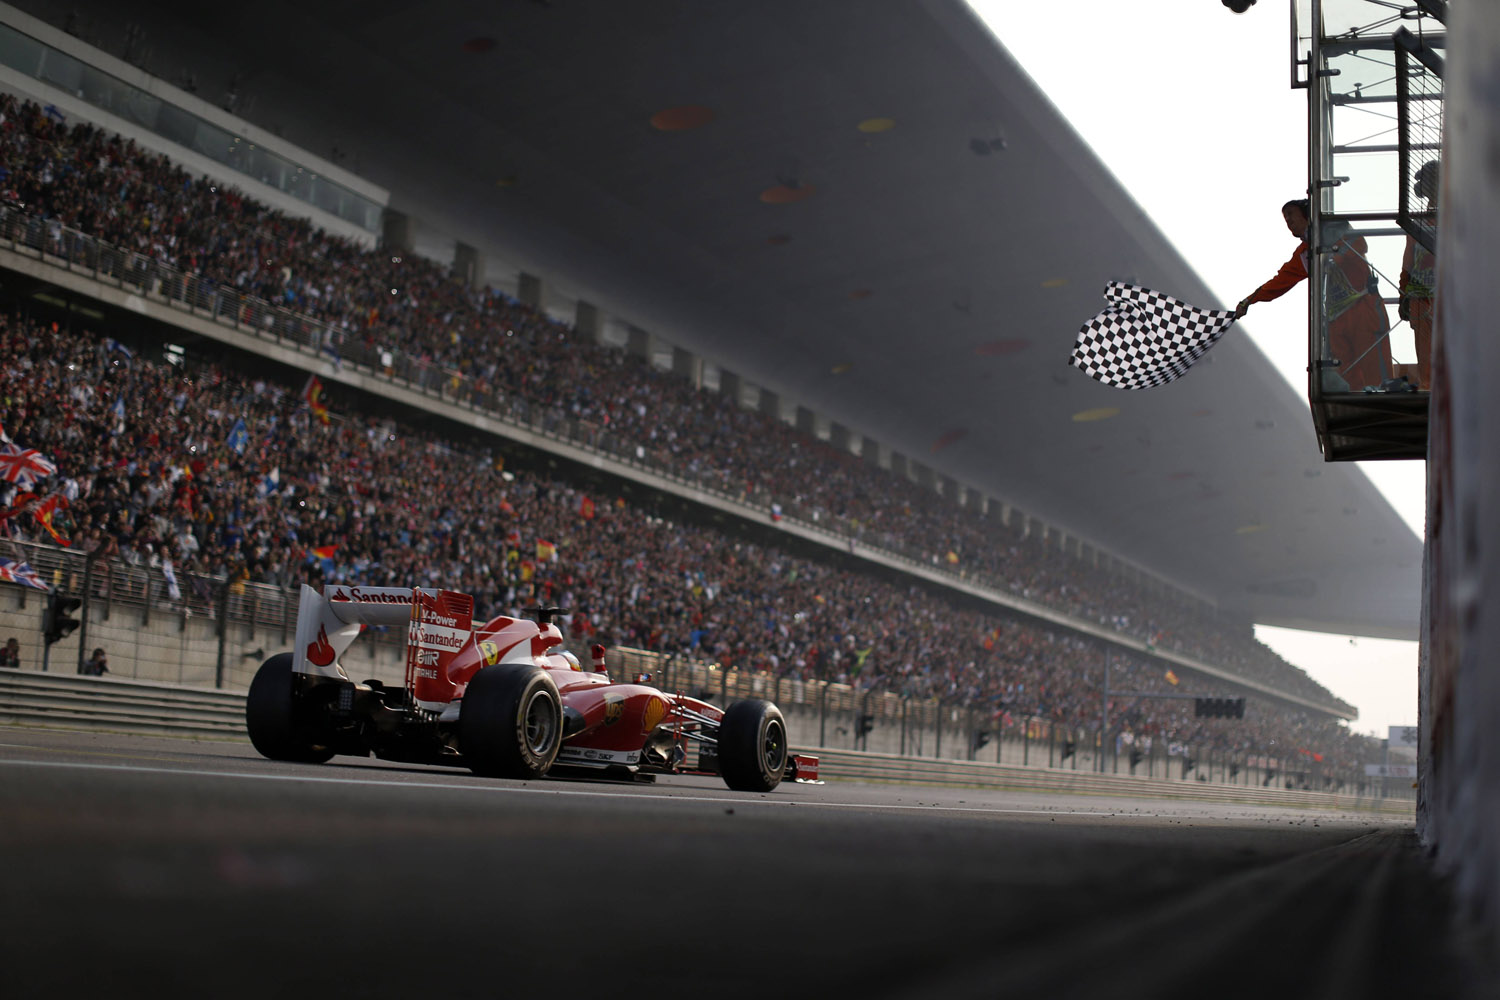 F1 2013 - Chinese Grand Prix - Alonso Wins